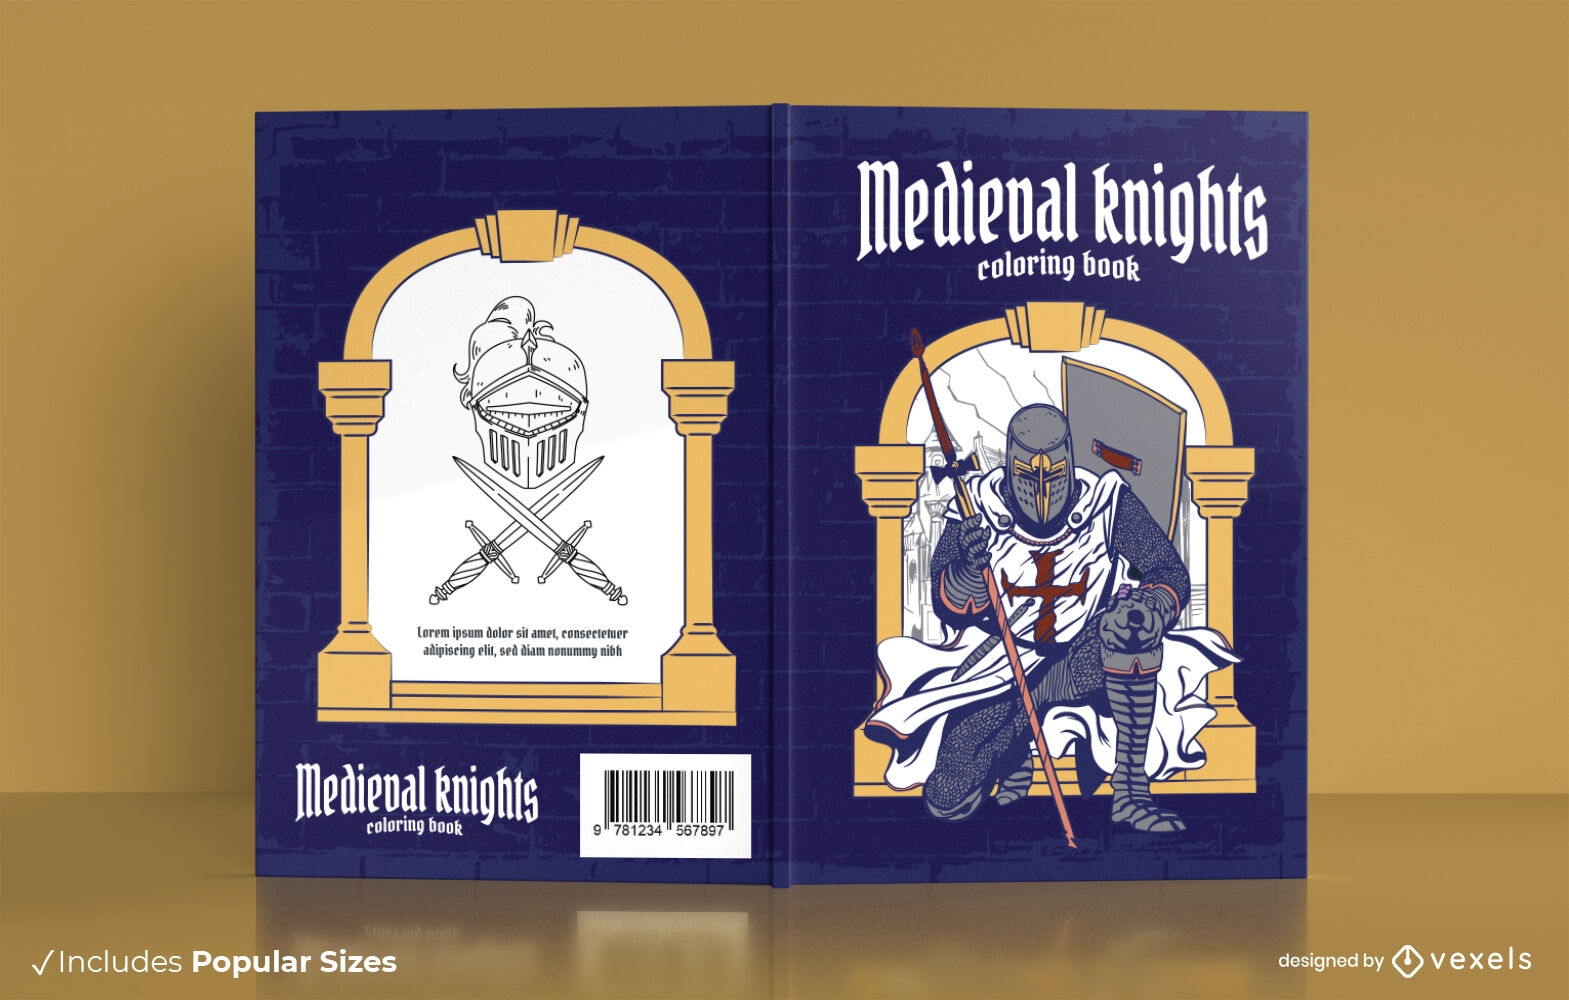 Diseño de portada de libro para colorear de caballeros medievales